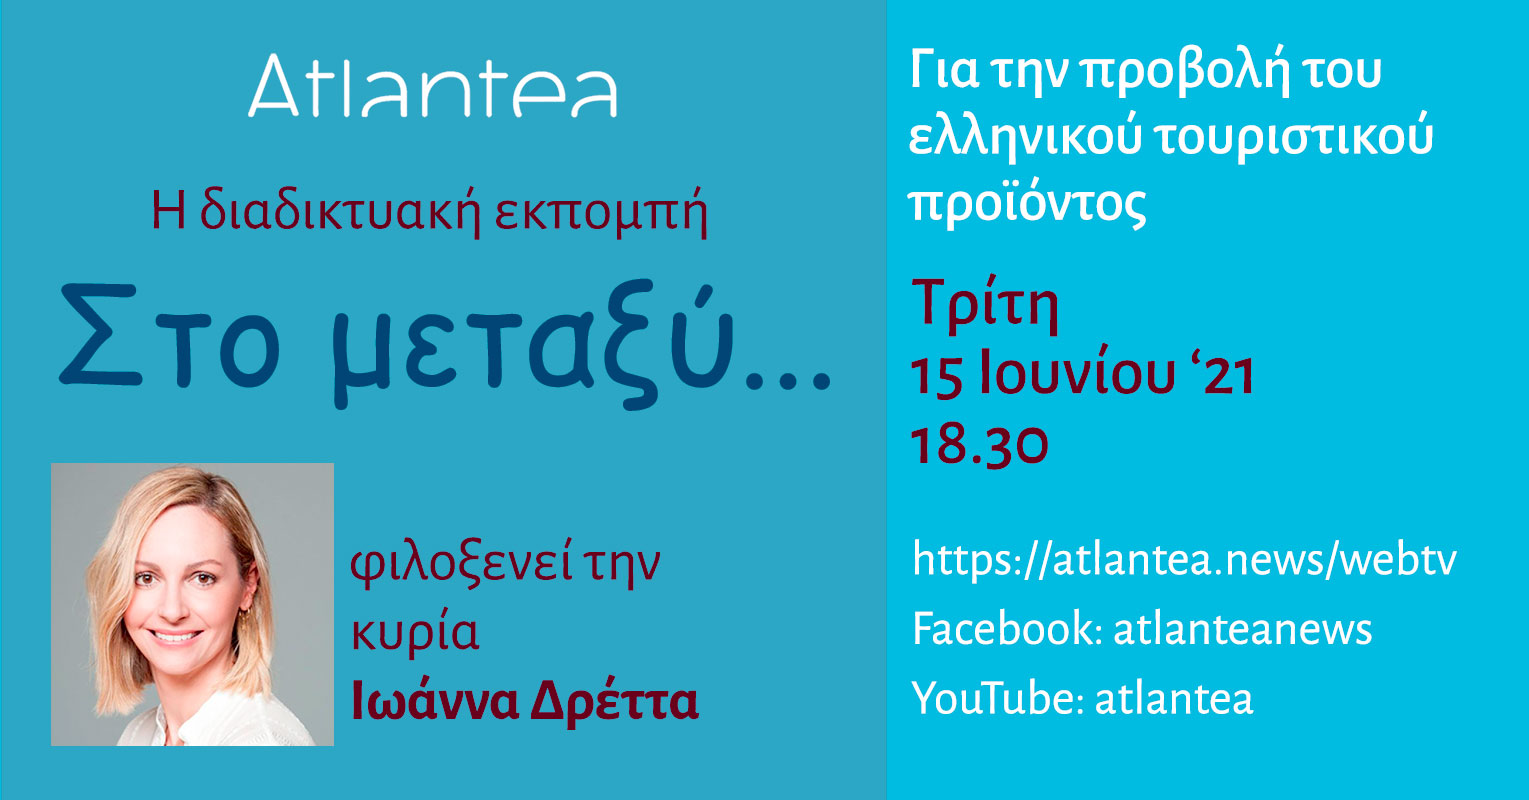 "Στο μεταξύ..." Τρίτη 15 Ιουνίου 2021 - Ο Ιωάννα Δρέττα για την προβολή του ελληνικού τουριστικού προϊόντος